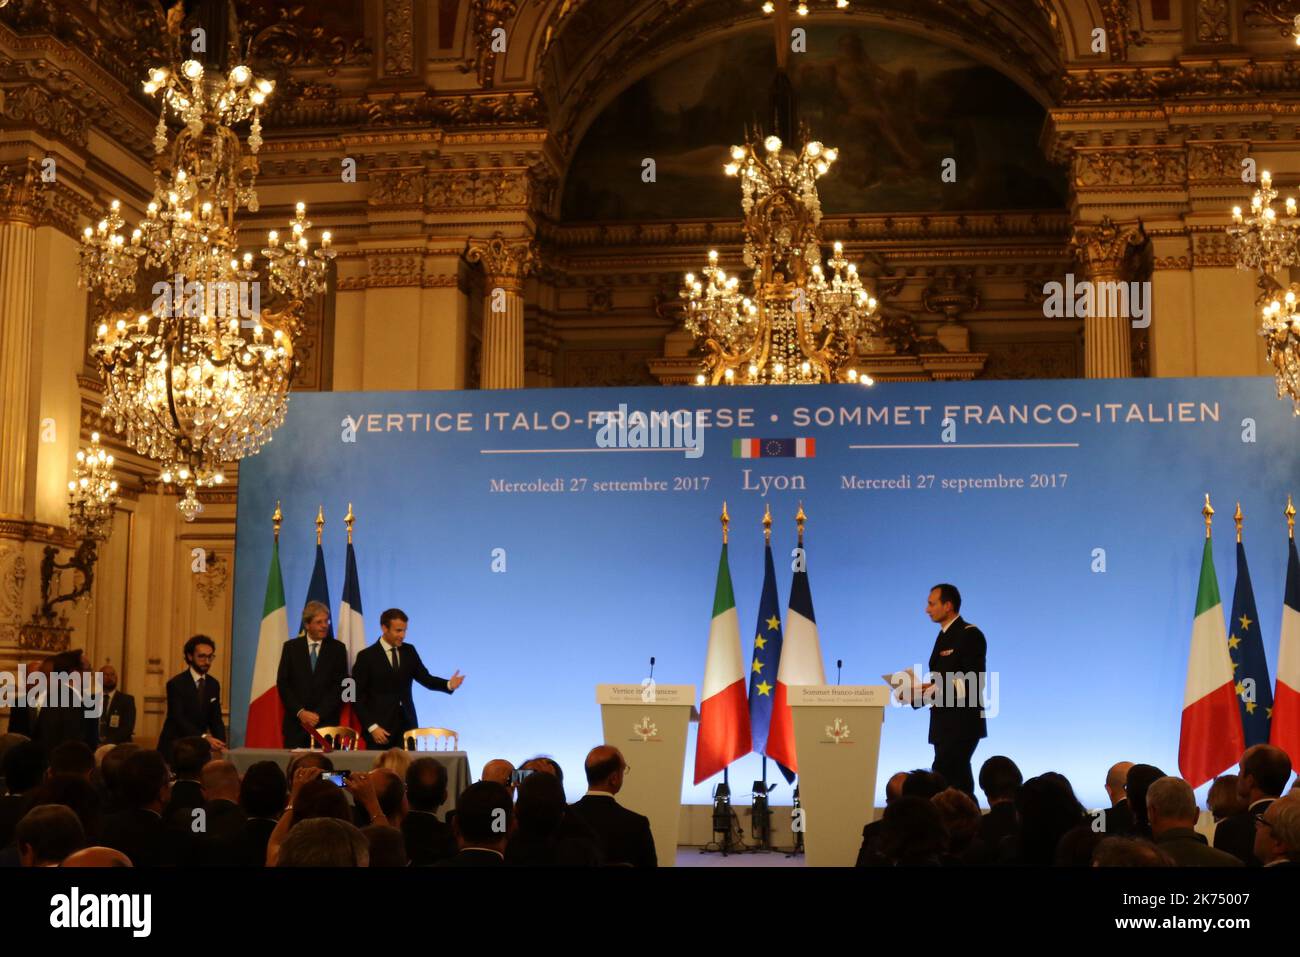 Le président français Emmanuel Macron et le Premier ministre italien Paolo Gentiloni donnent une conférence de presse au Sommet de France Italie - Vertice Italo-Francois - Sommet Franco-Italien, à Lyon sur 27 septembre 2017 Banque D'Images